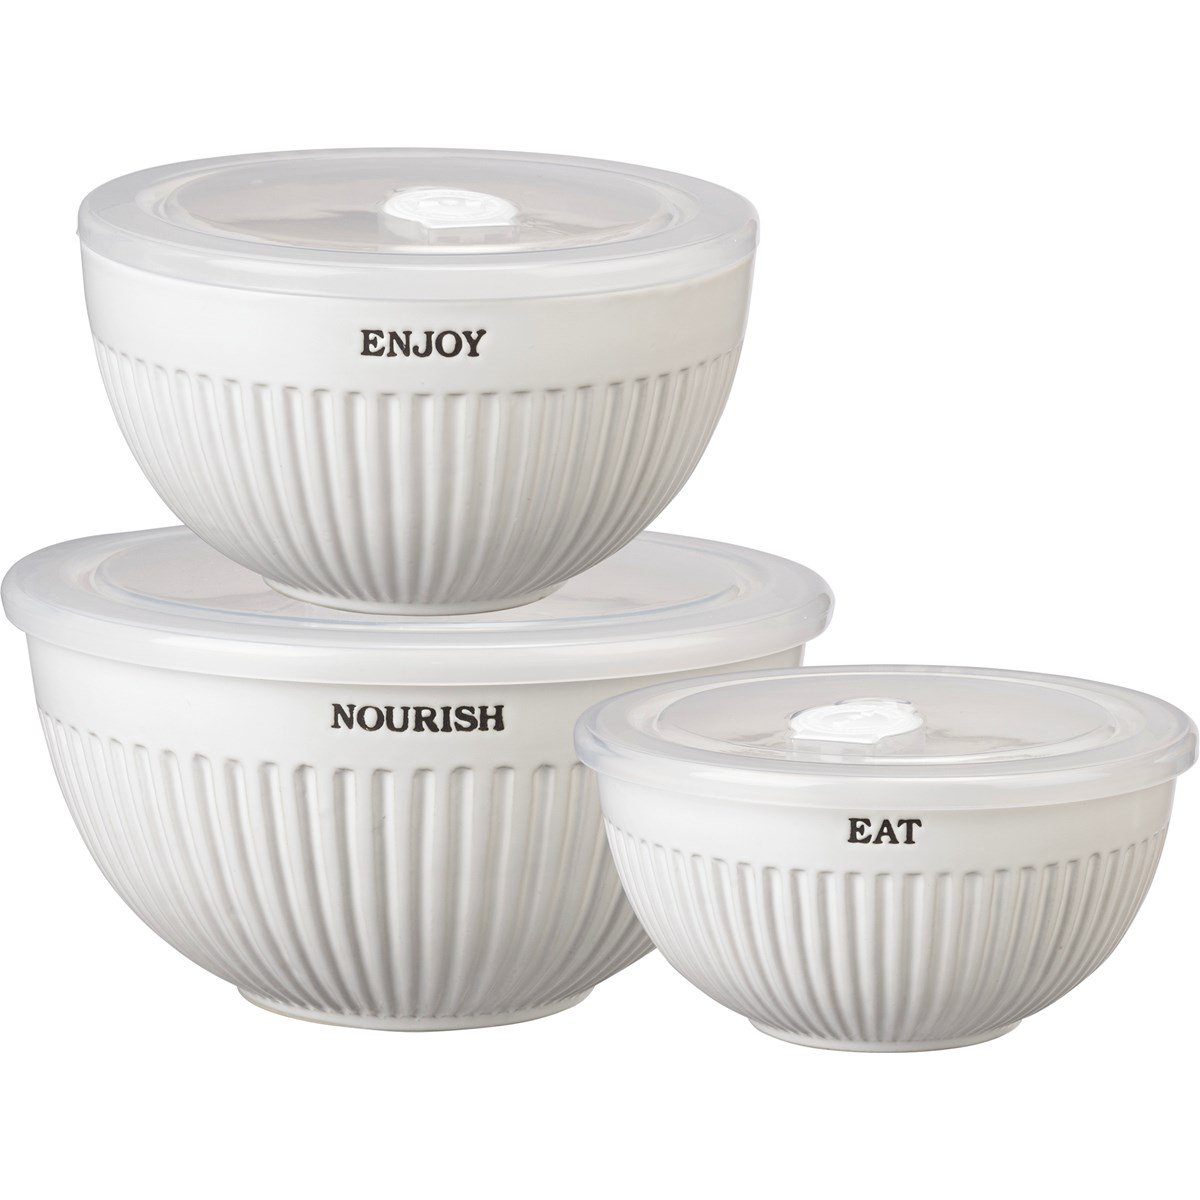 Nourish Enjoy Eat Bowl Set